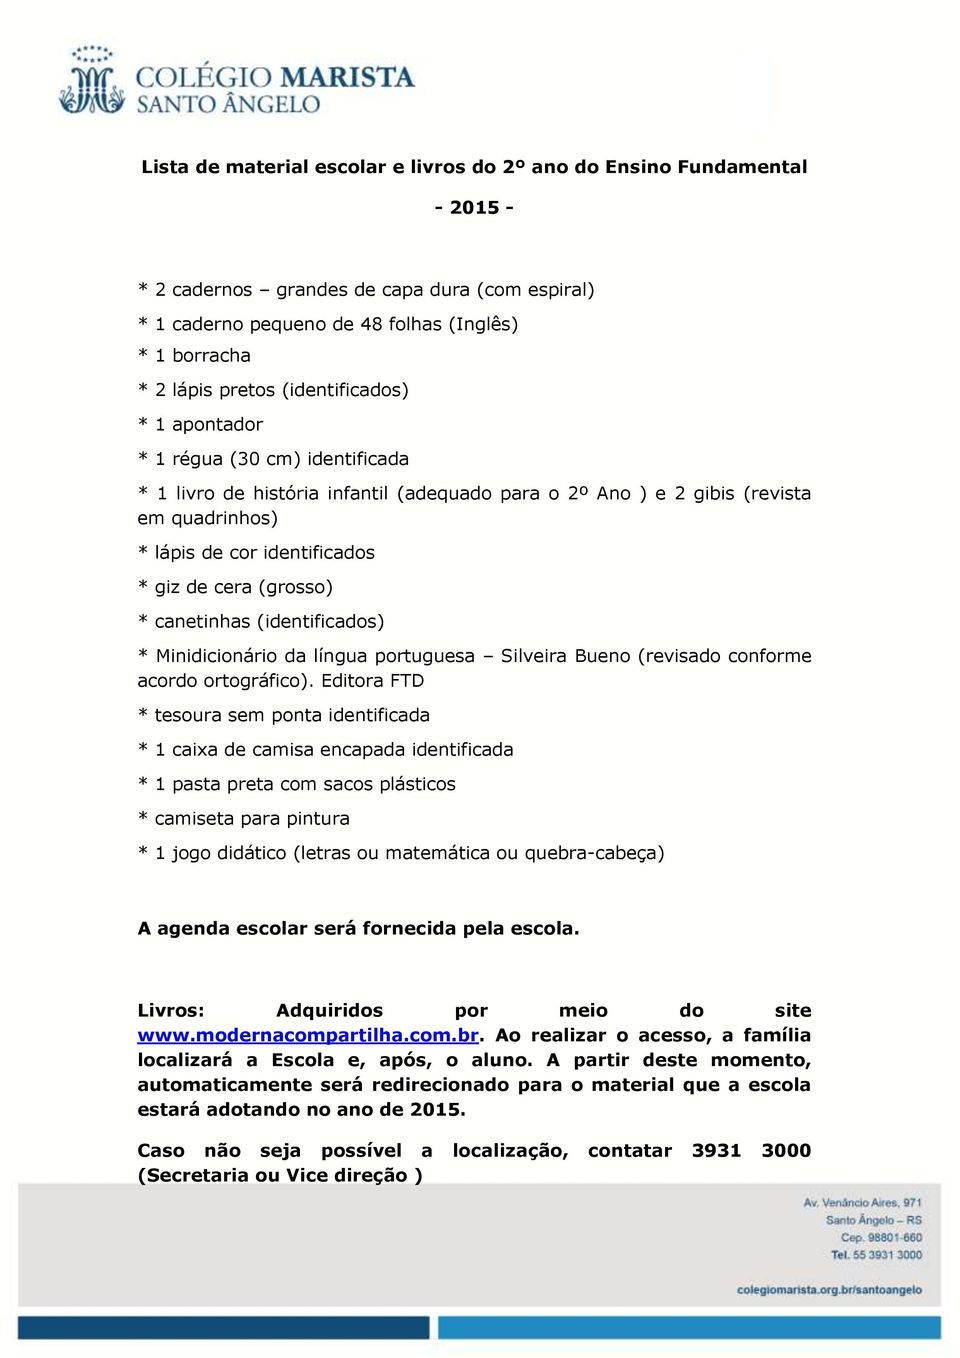 (grosso) * canetinhas (identificados) * Minidicionário da língua portuguesa Silveira Bueno (revisado conforme acordo ortográfico).